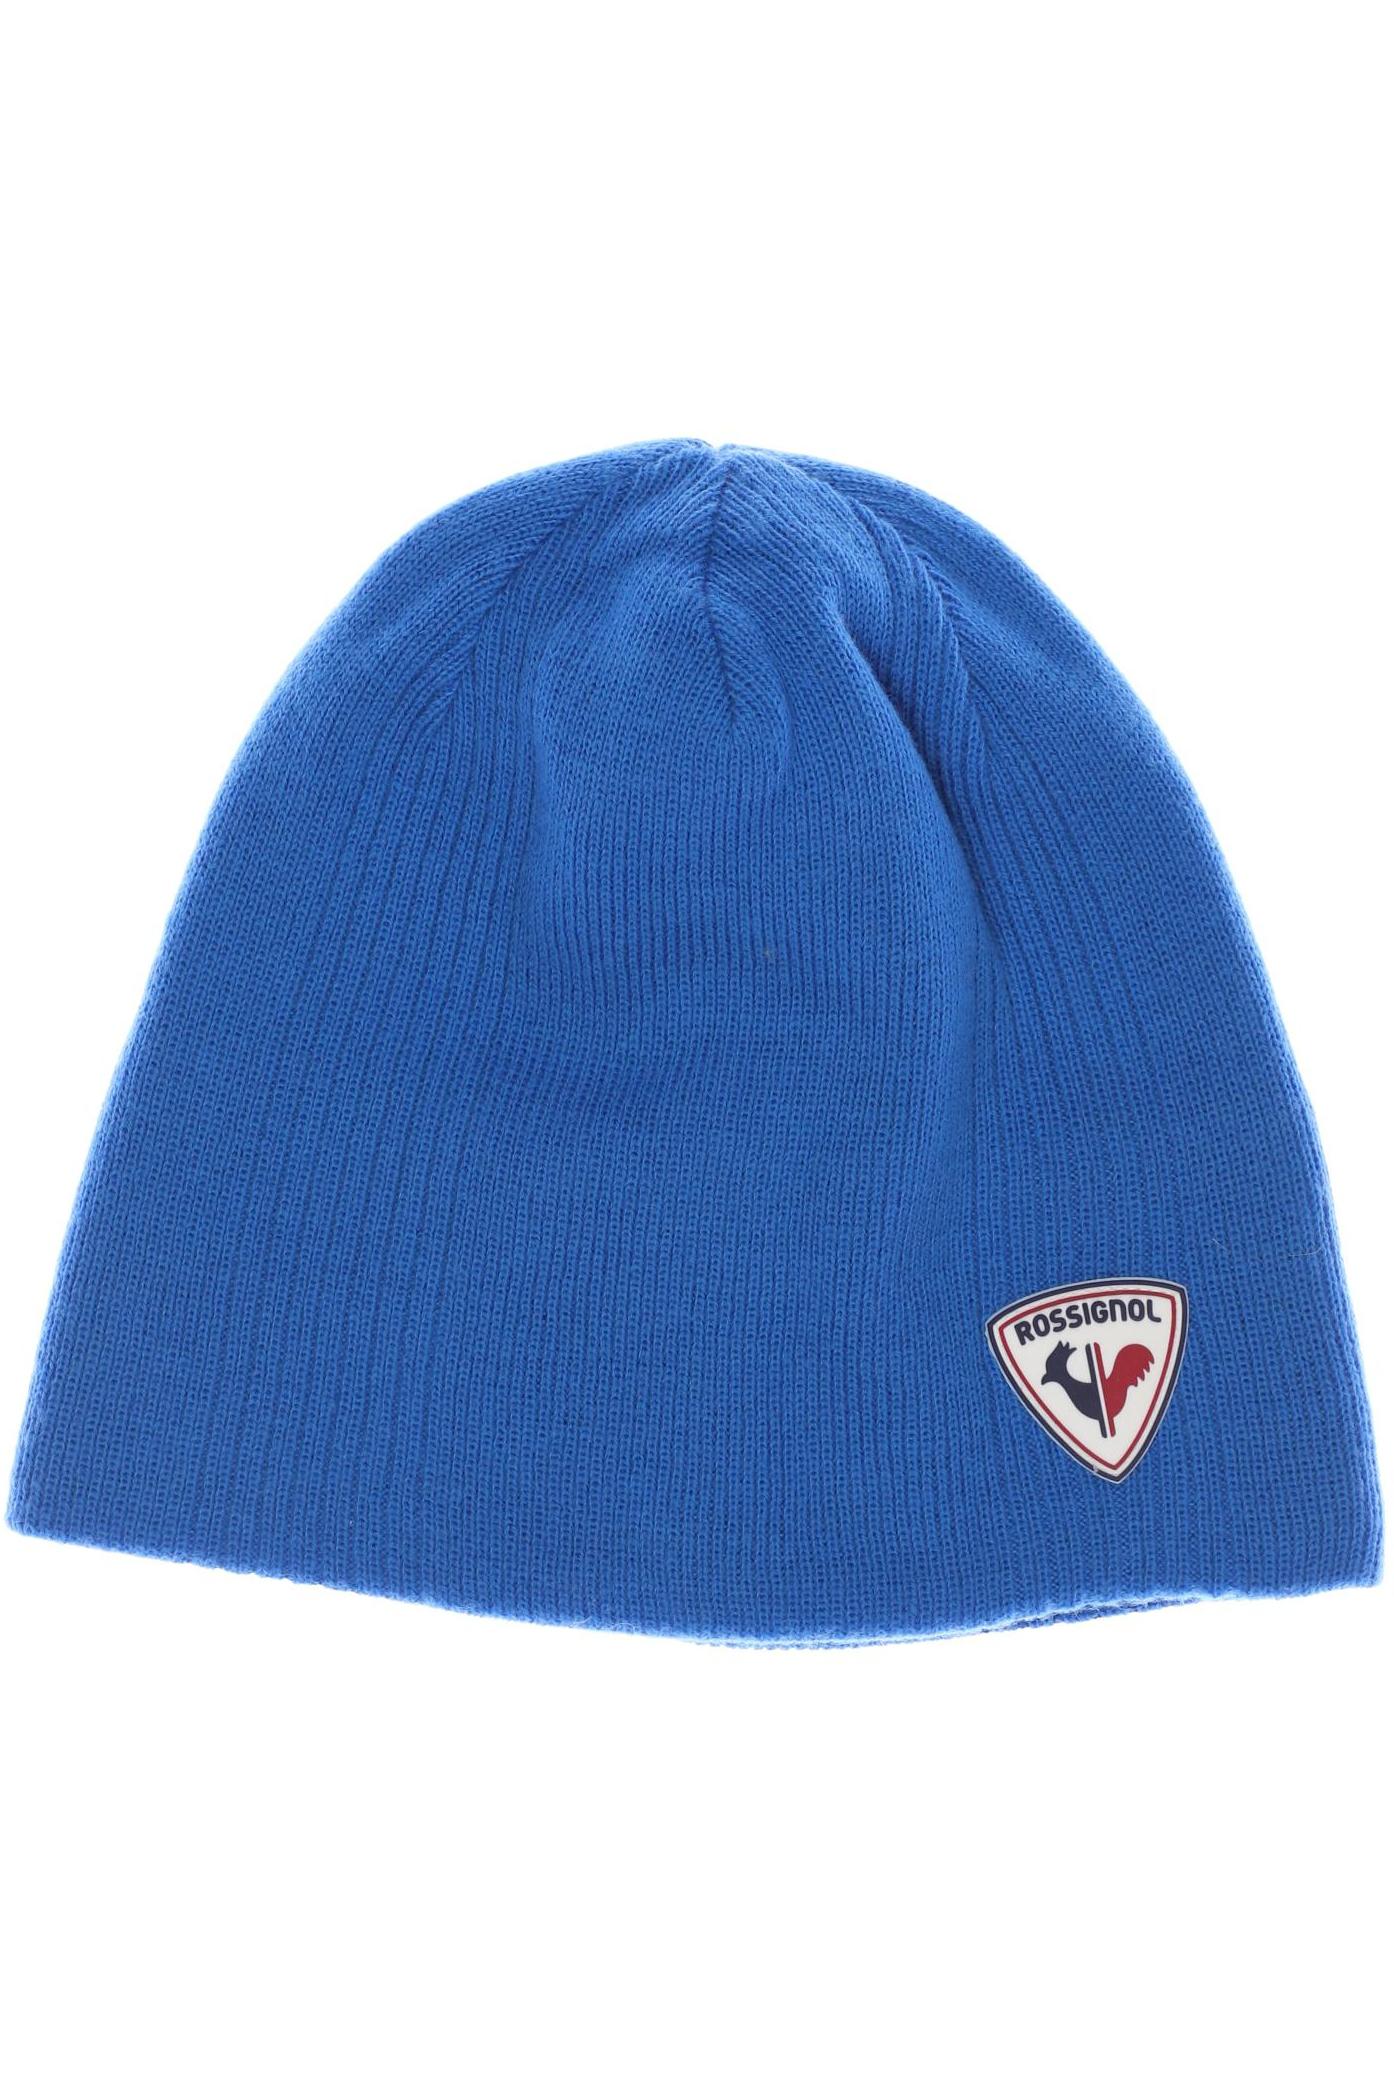 Rossignol Herren Hut/Mütze, blau, Gr. uni von Rossignol